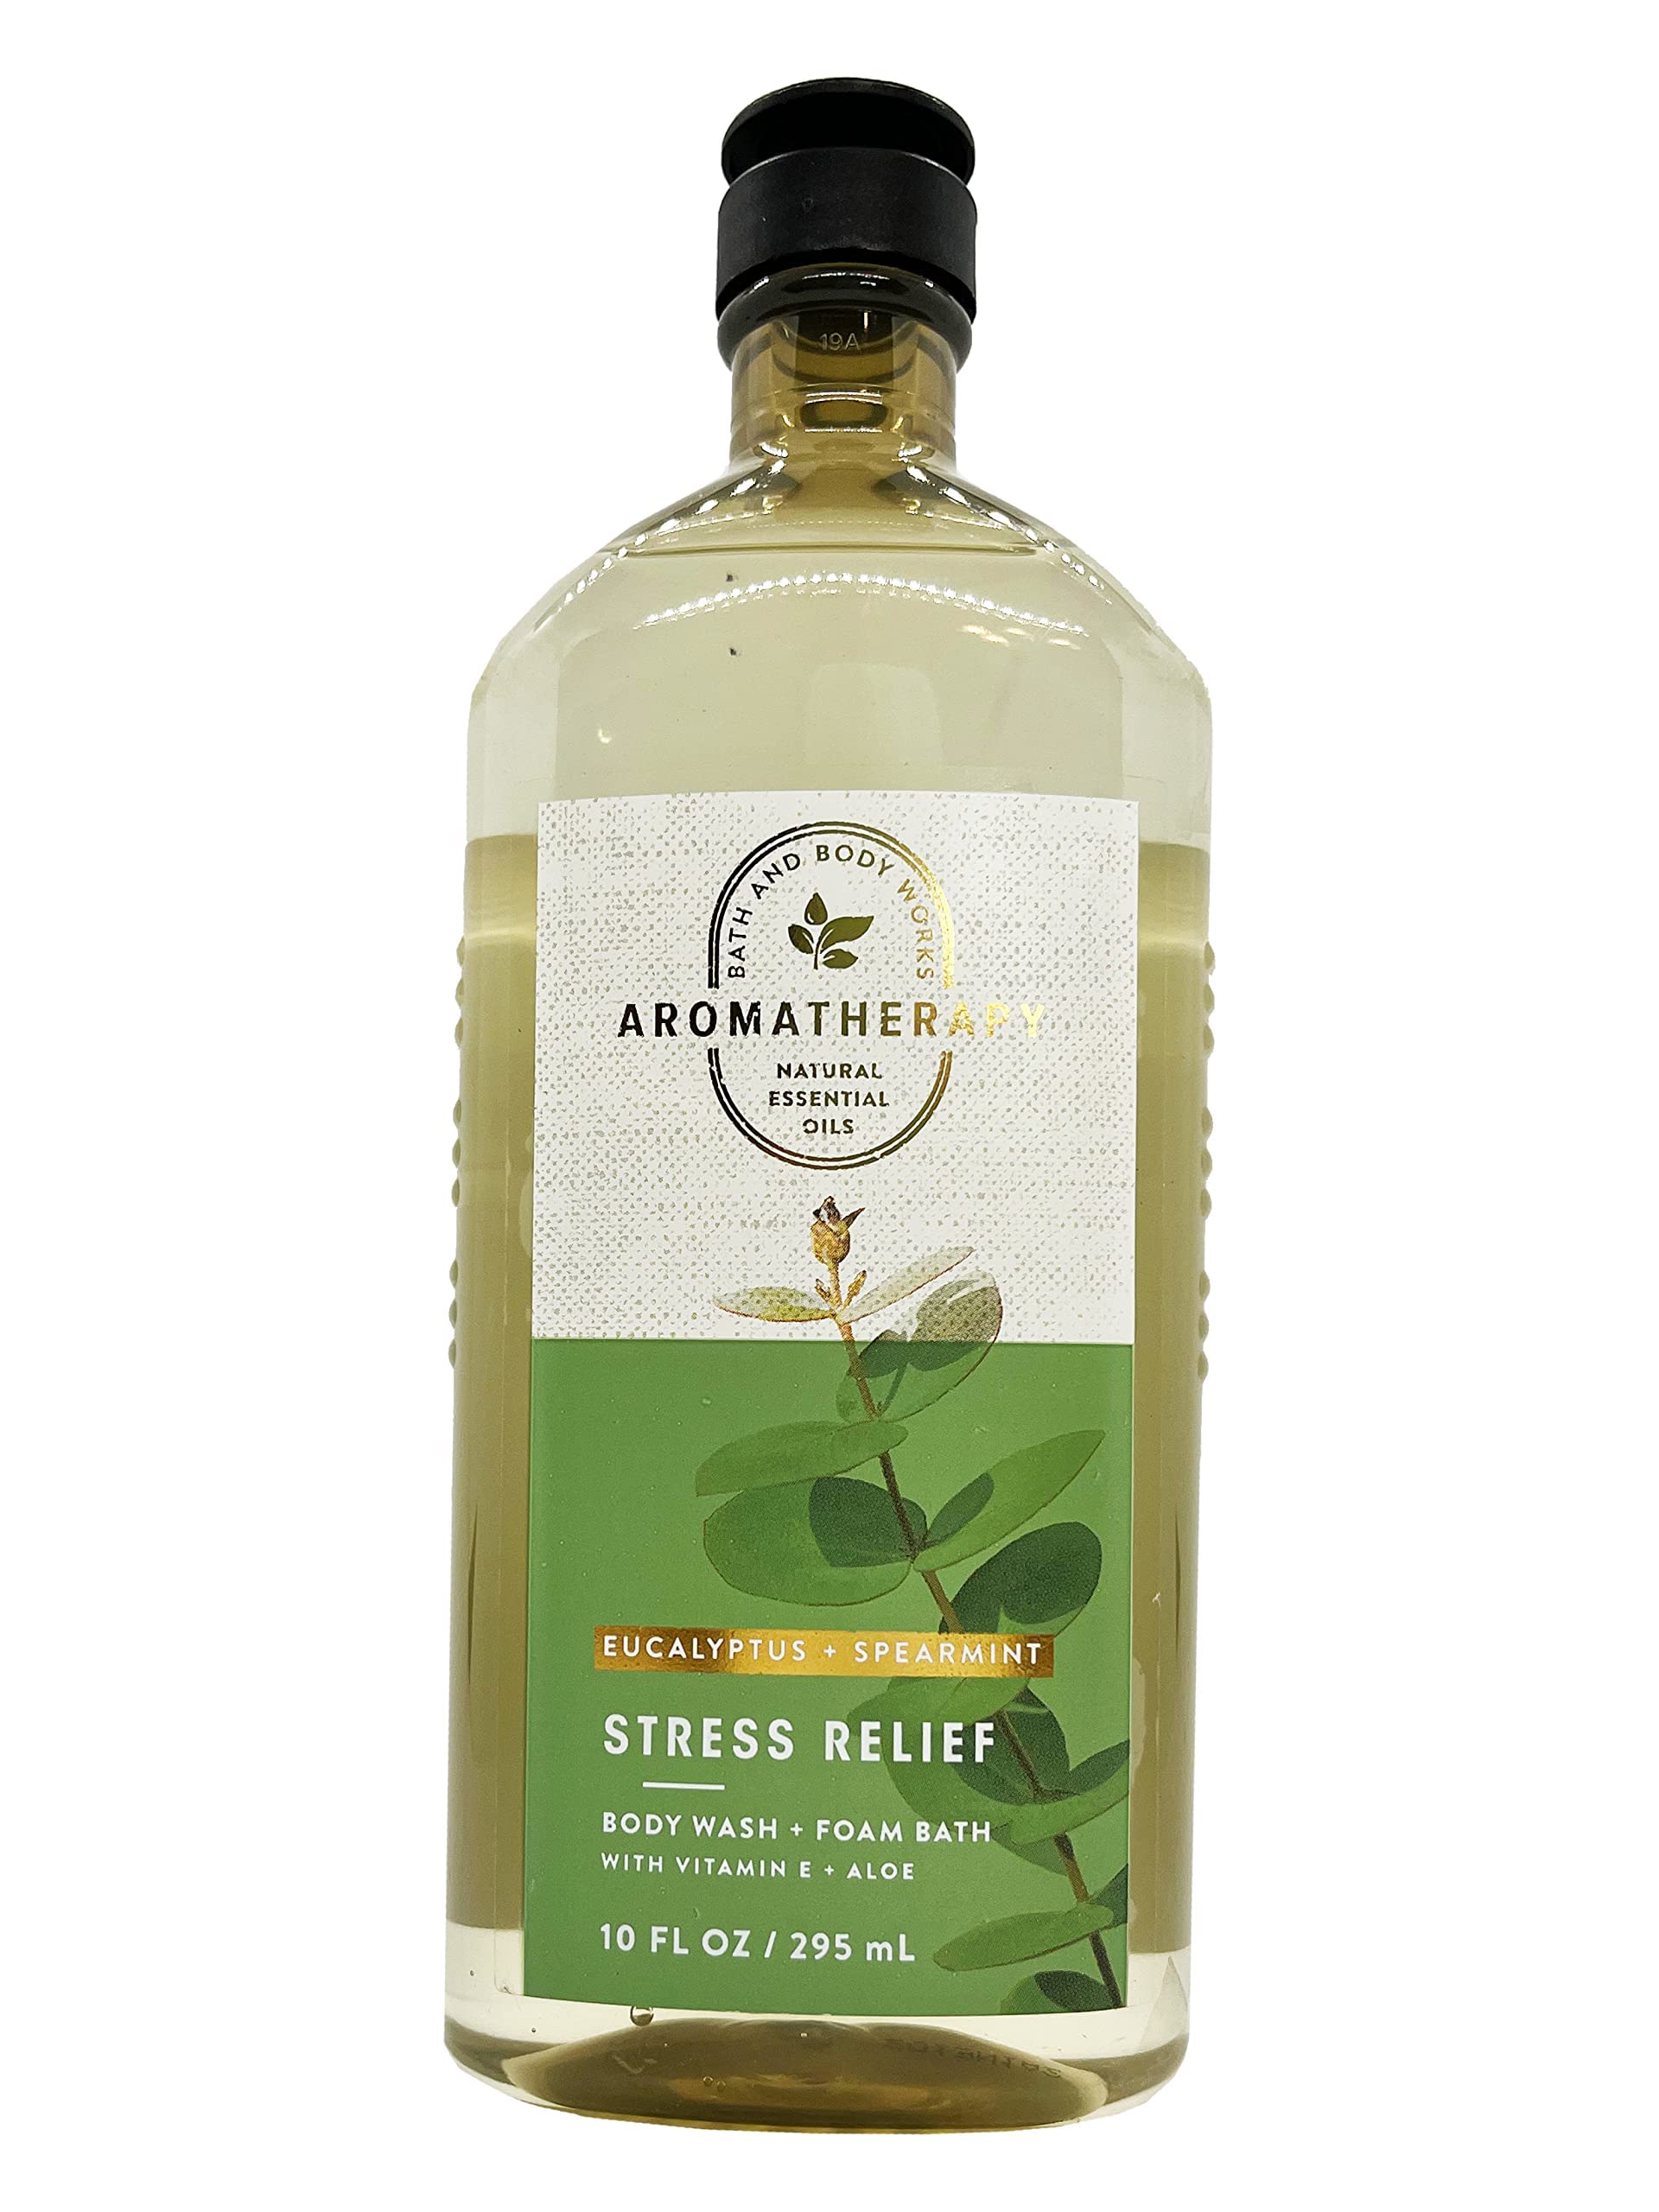 Bath & Body Works Aromatherapy Stress Relief - Eucalyptus + Spearmint Body Wash & Foam Bath, 10 Fl Oz